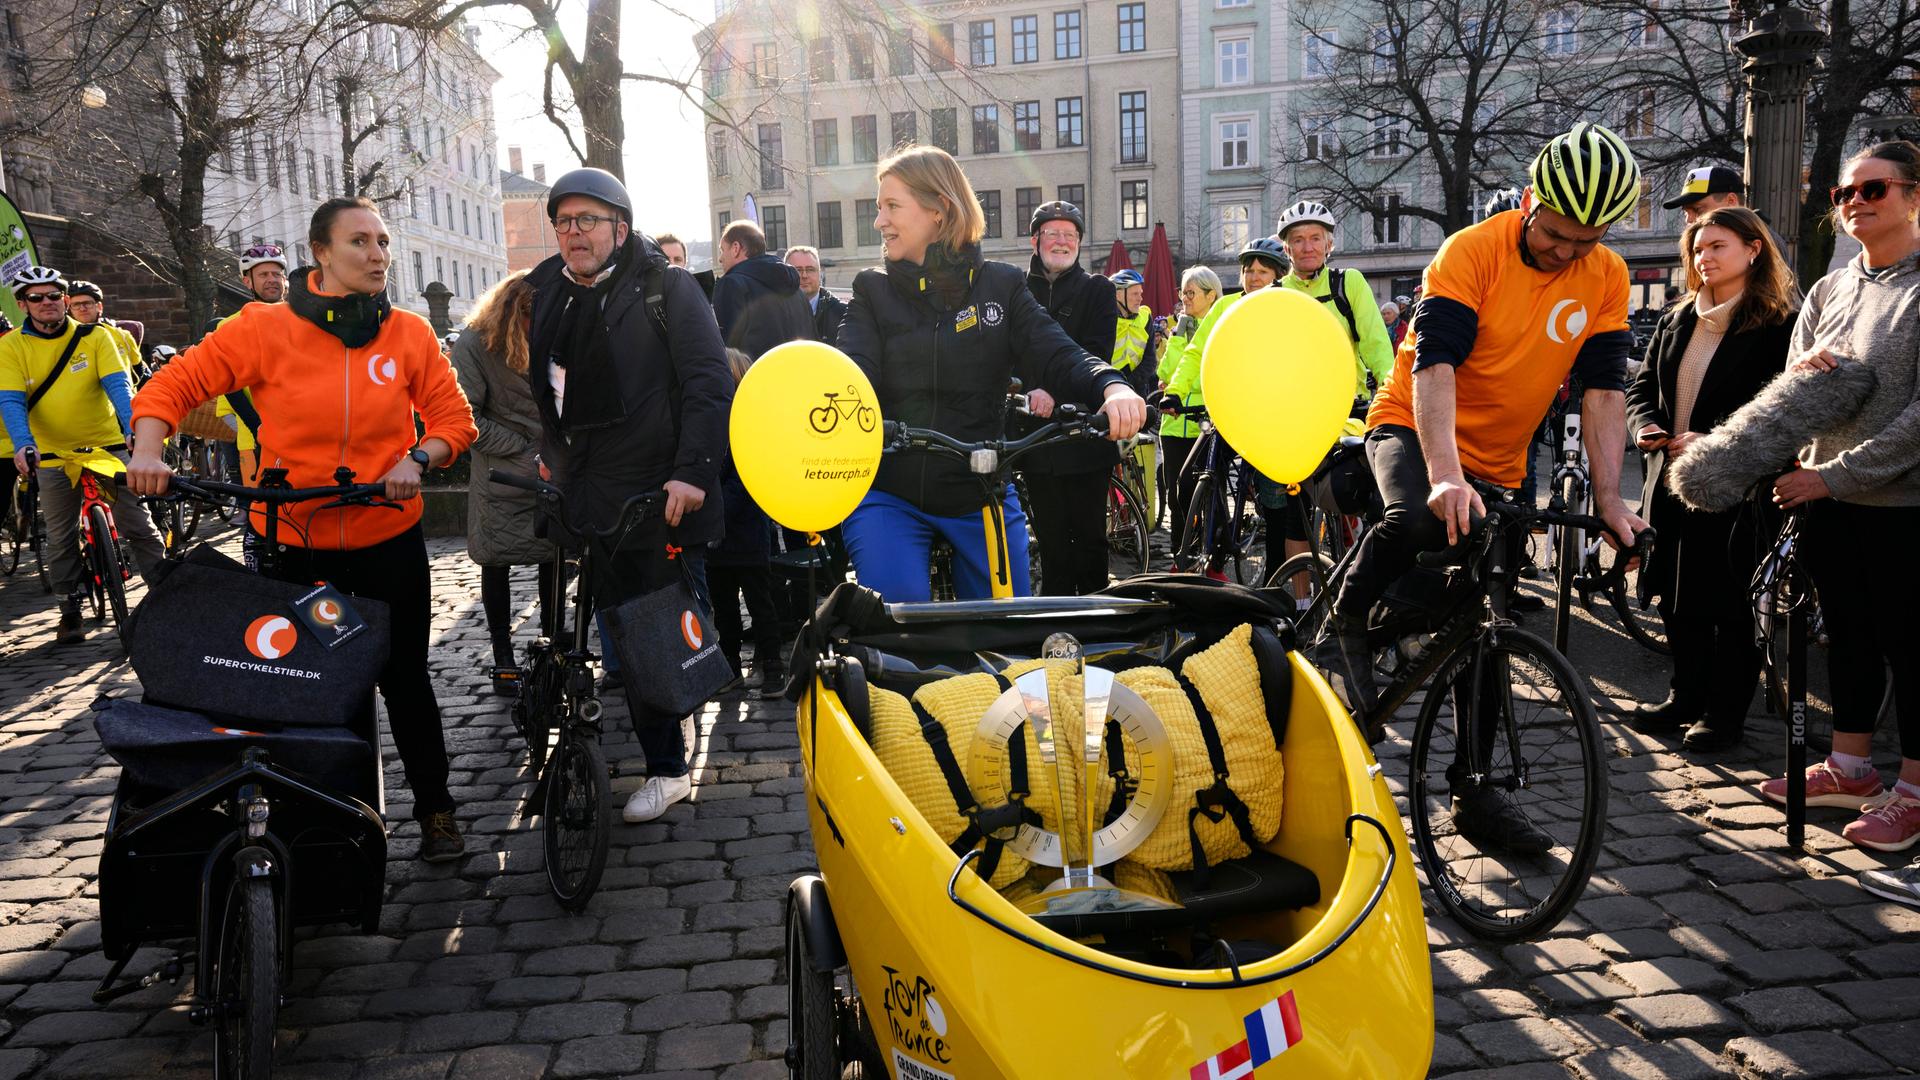 Radsport - Start der Tour de France: Begeisterung in Kopenhagen